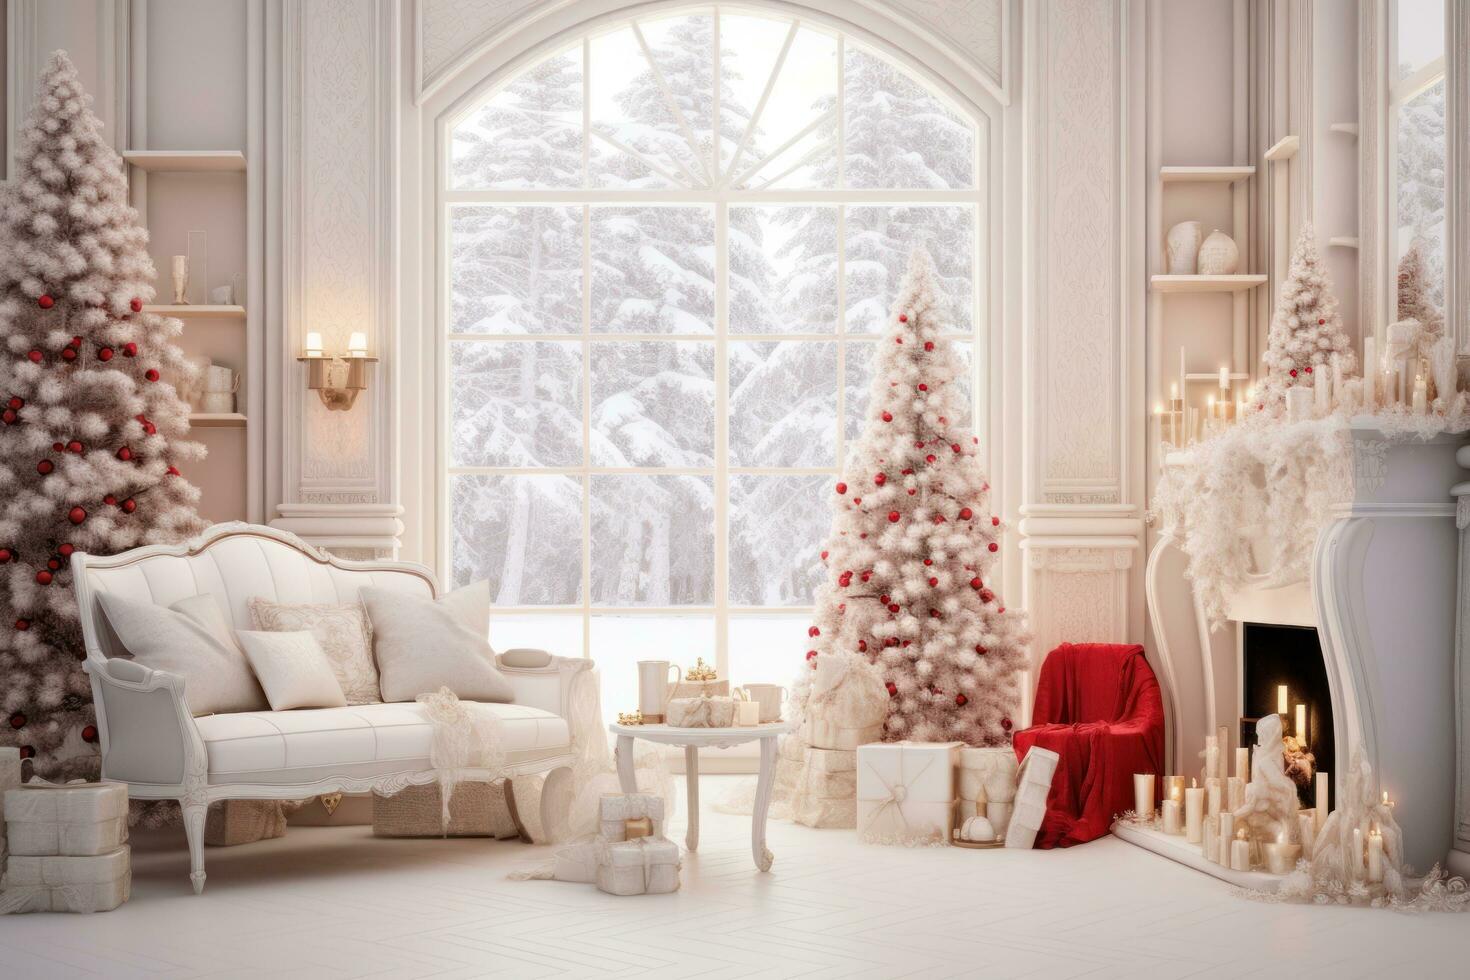 vit rum med jul dekoration foto